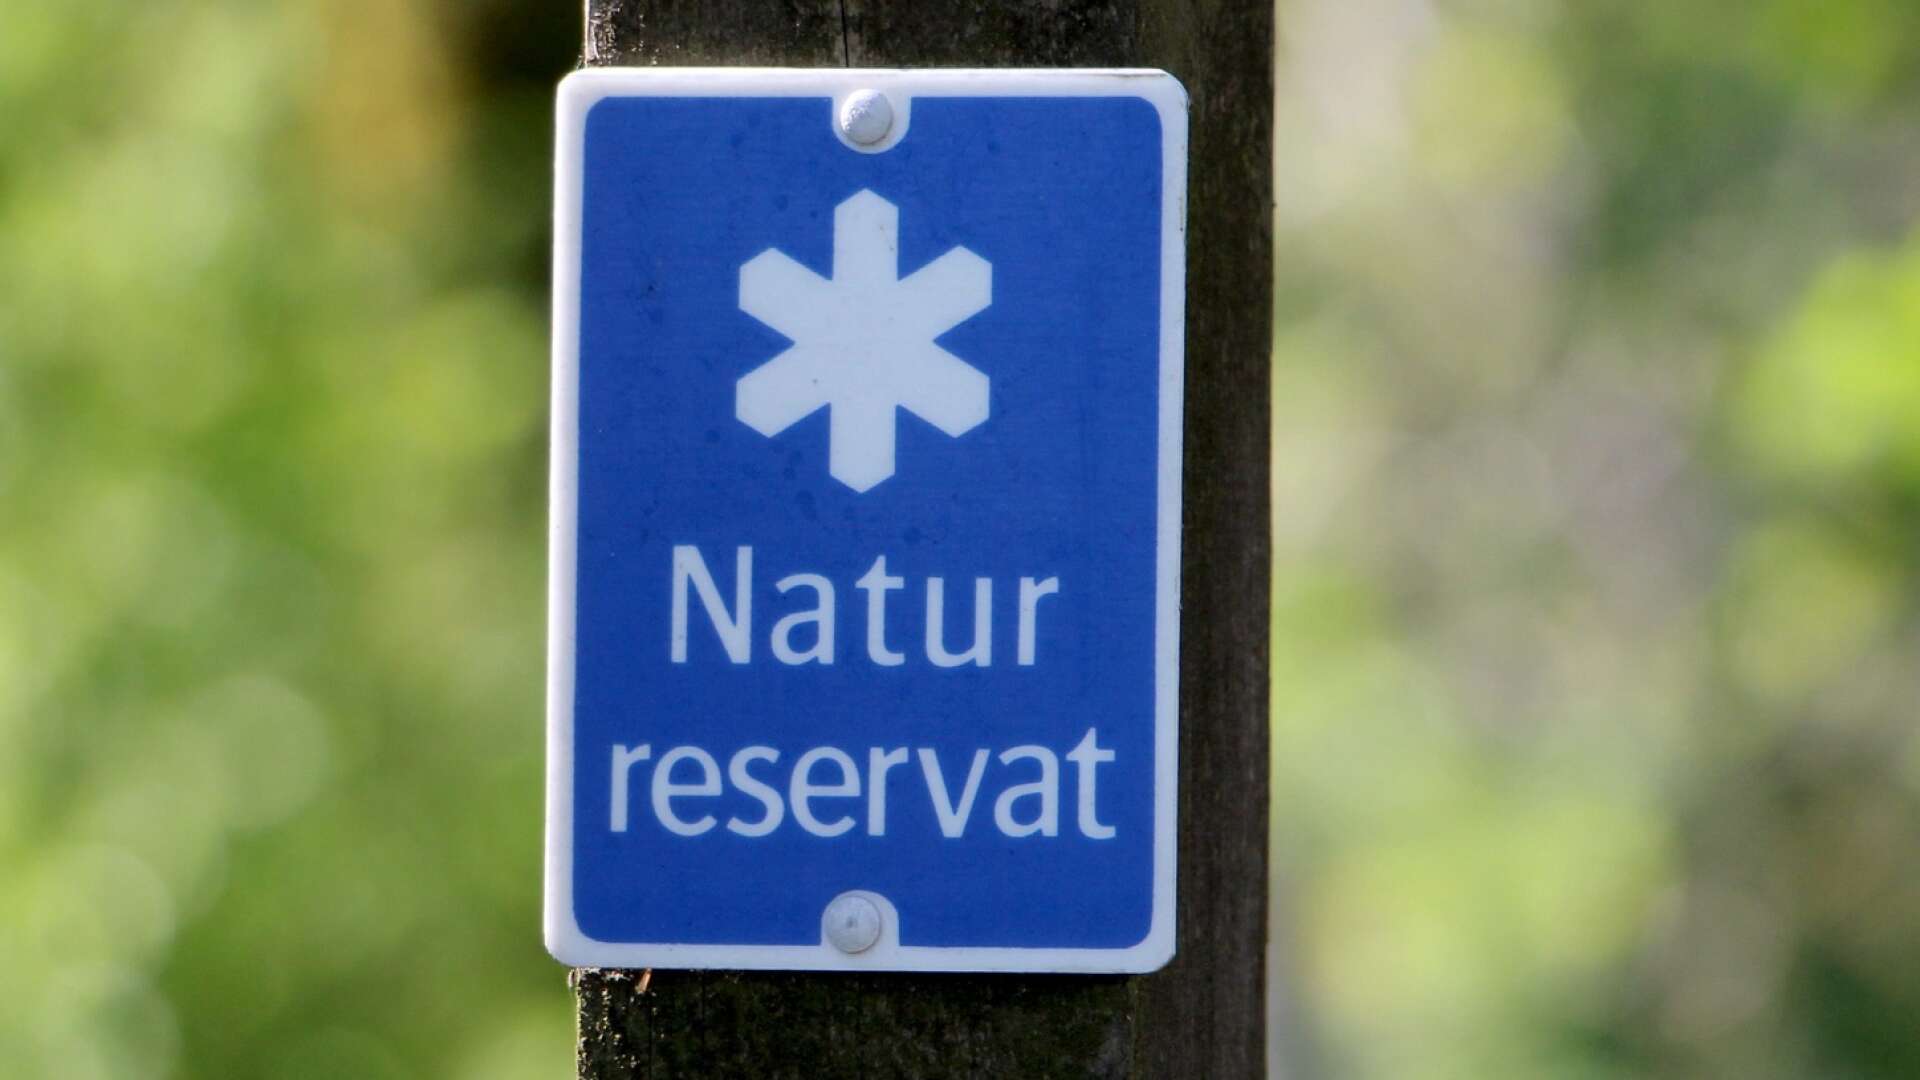 Visnums stormosse är nu officiellt ett naturreservat.